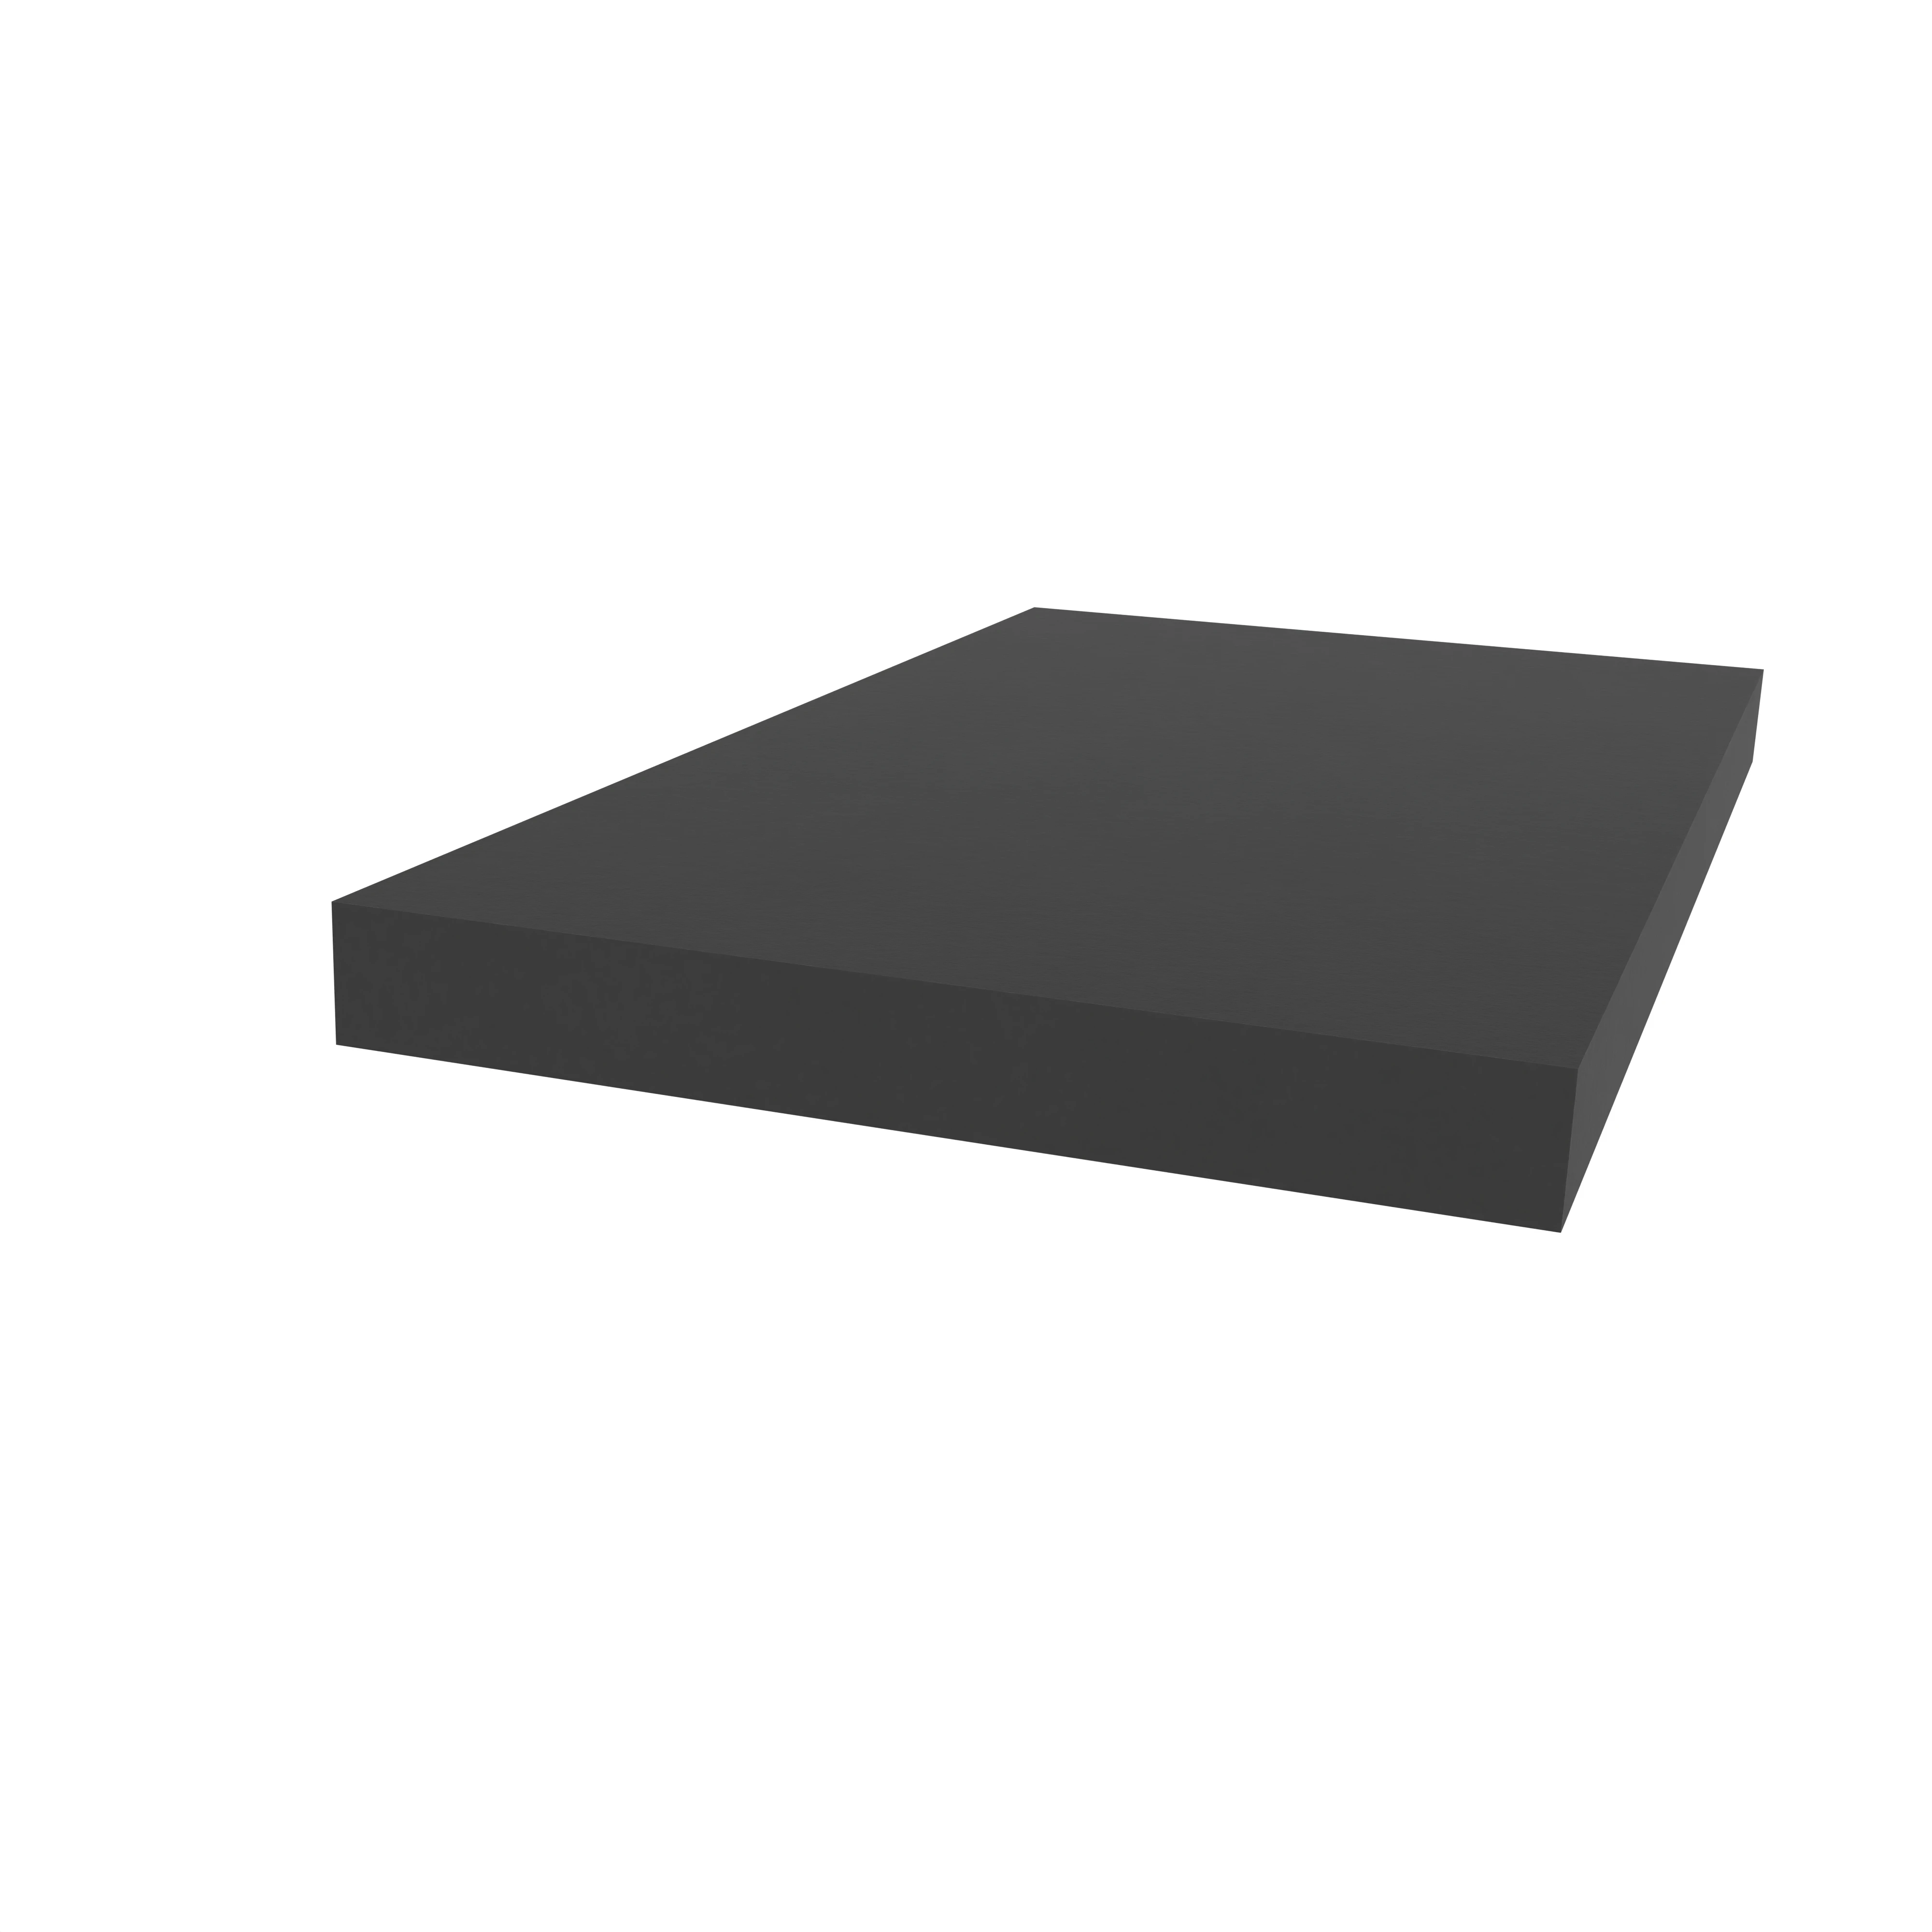 Moosgummidichtung vierkant | 25 mm Breite | Farbe: schwarz